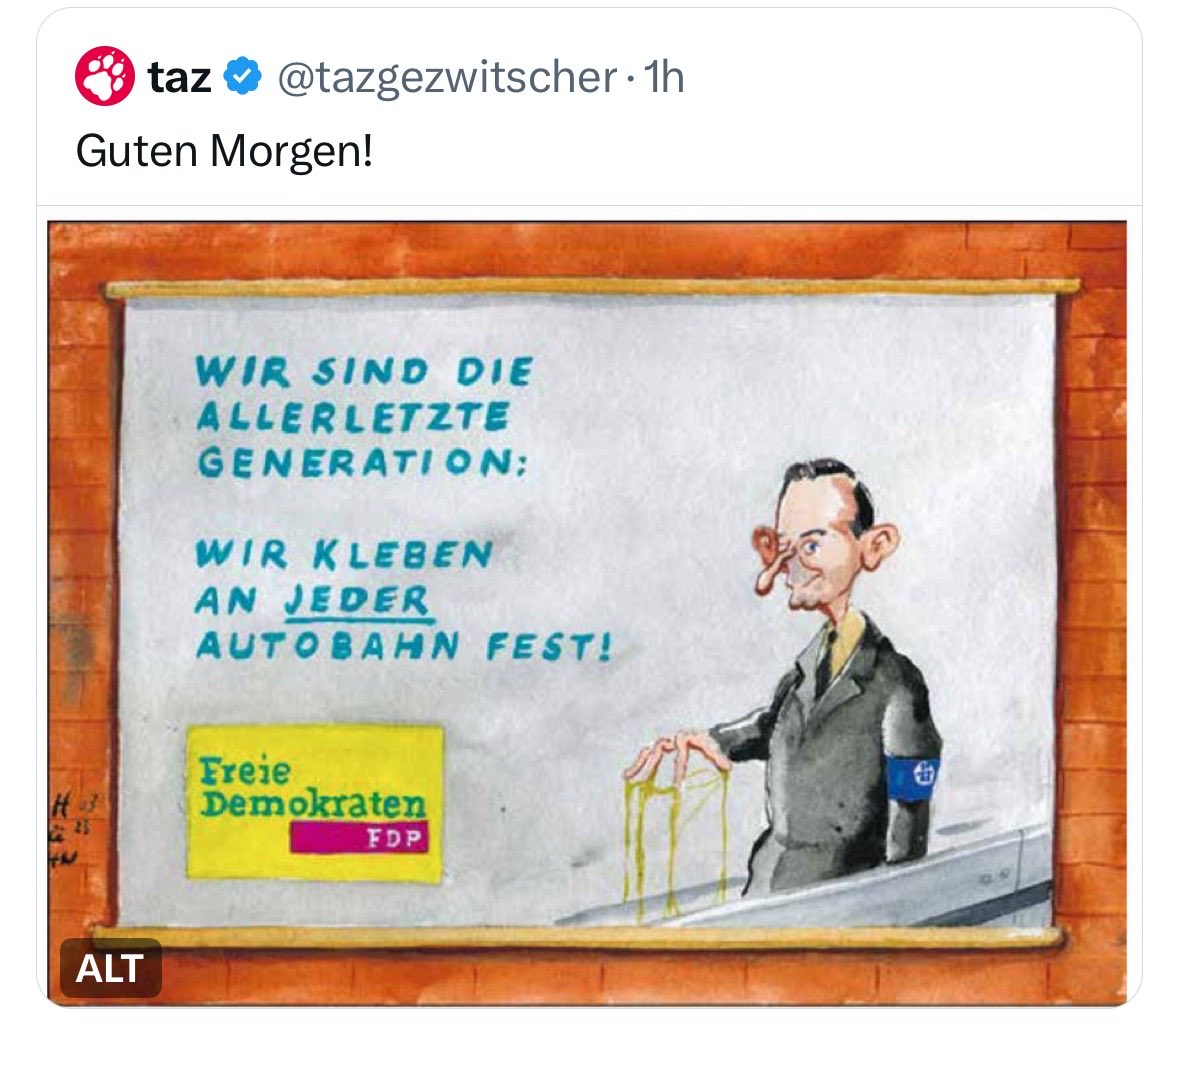 Linke Tageszeitung "taz" distanziert sich von Karikatur mit Nazi-Bezug zur FDP und Autobahnen